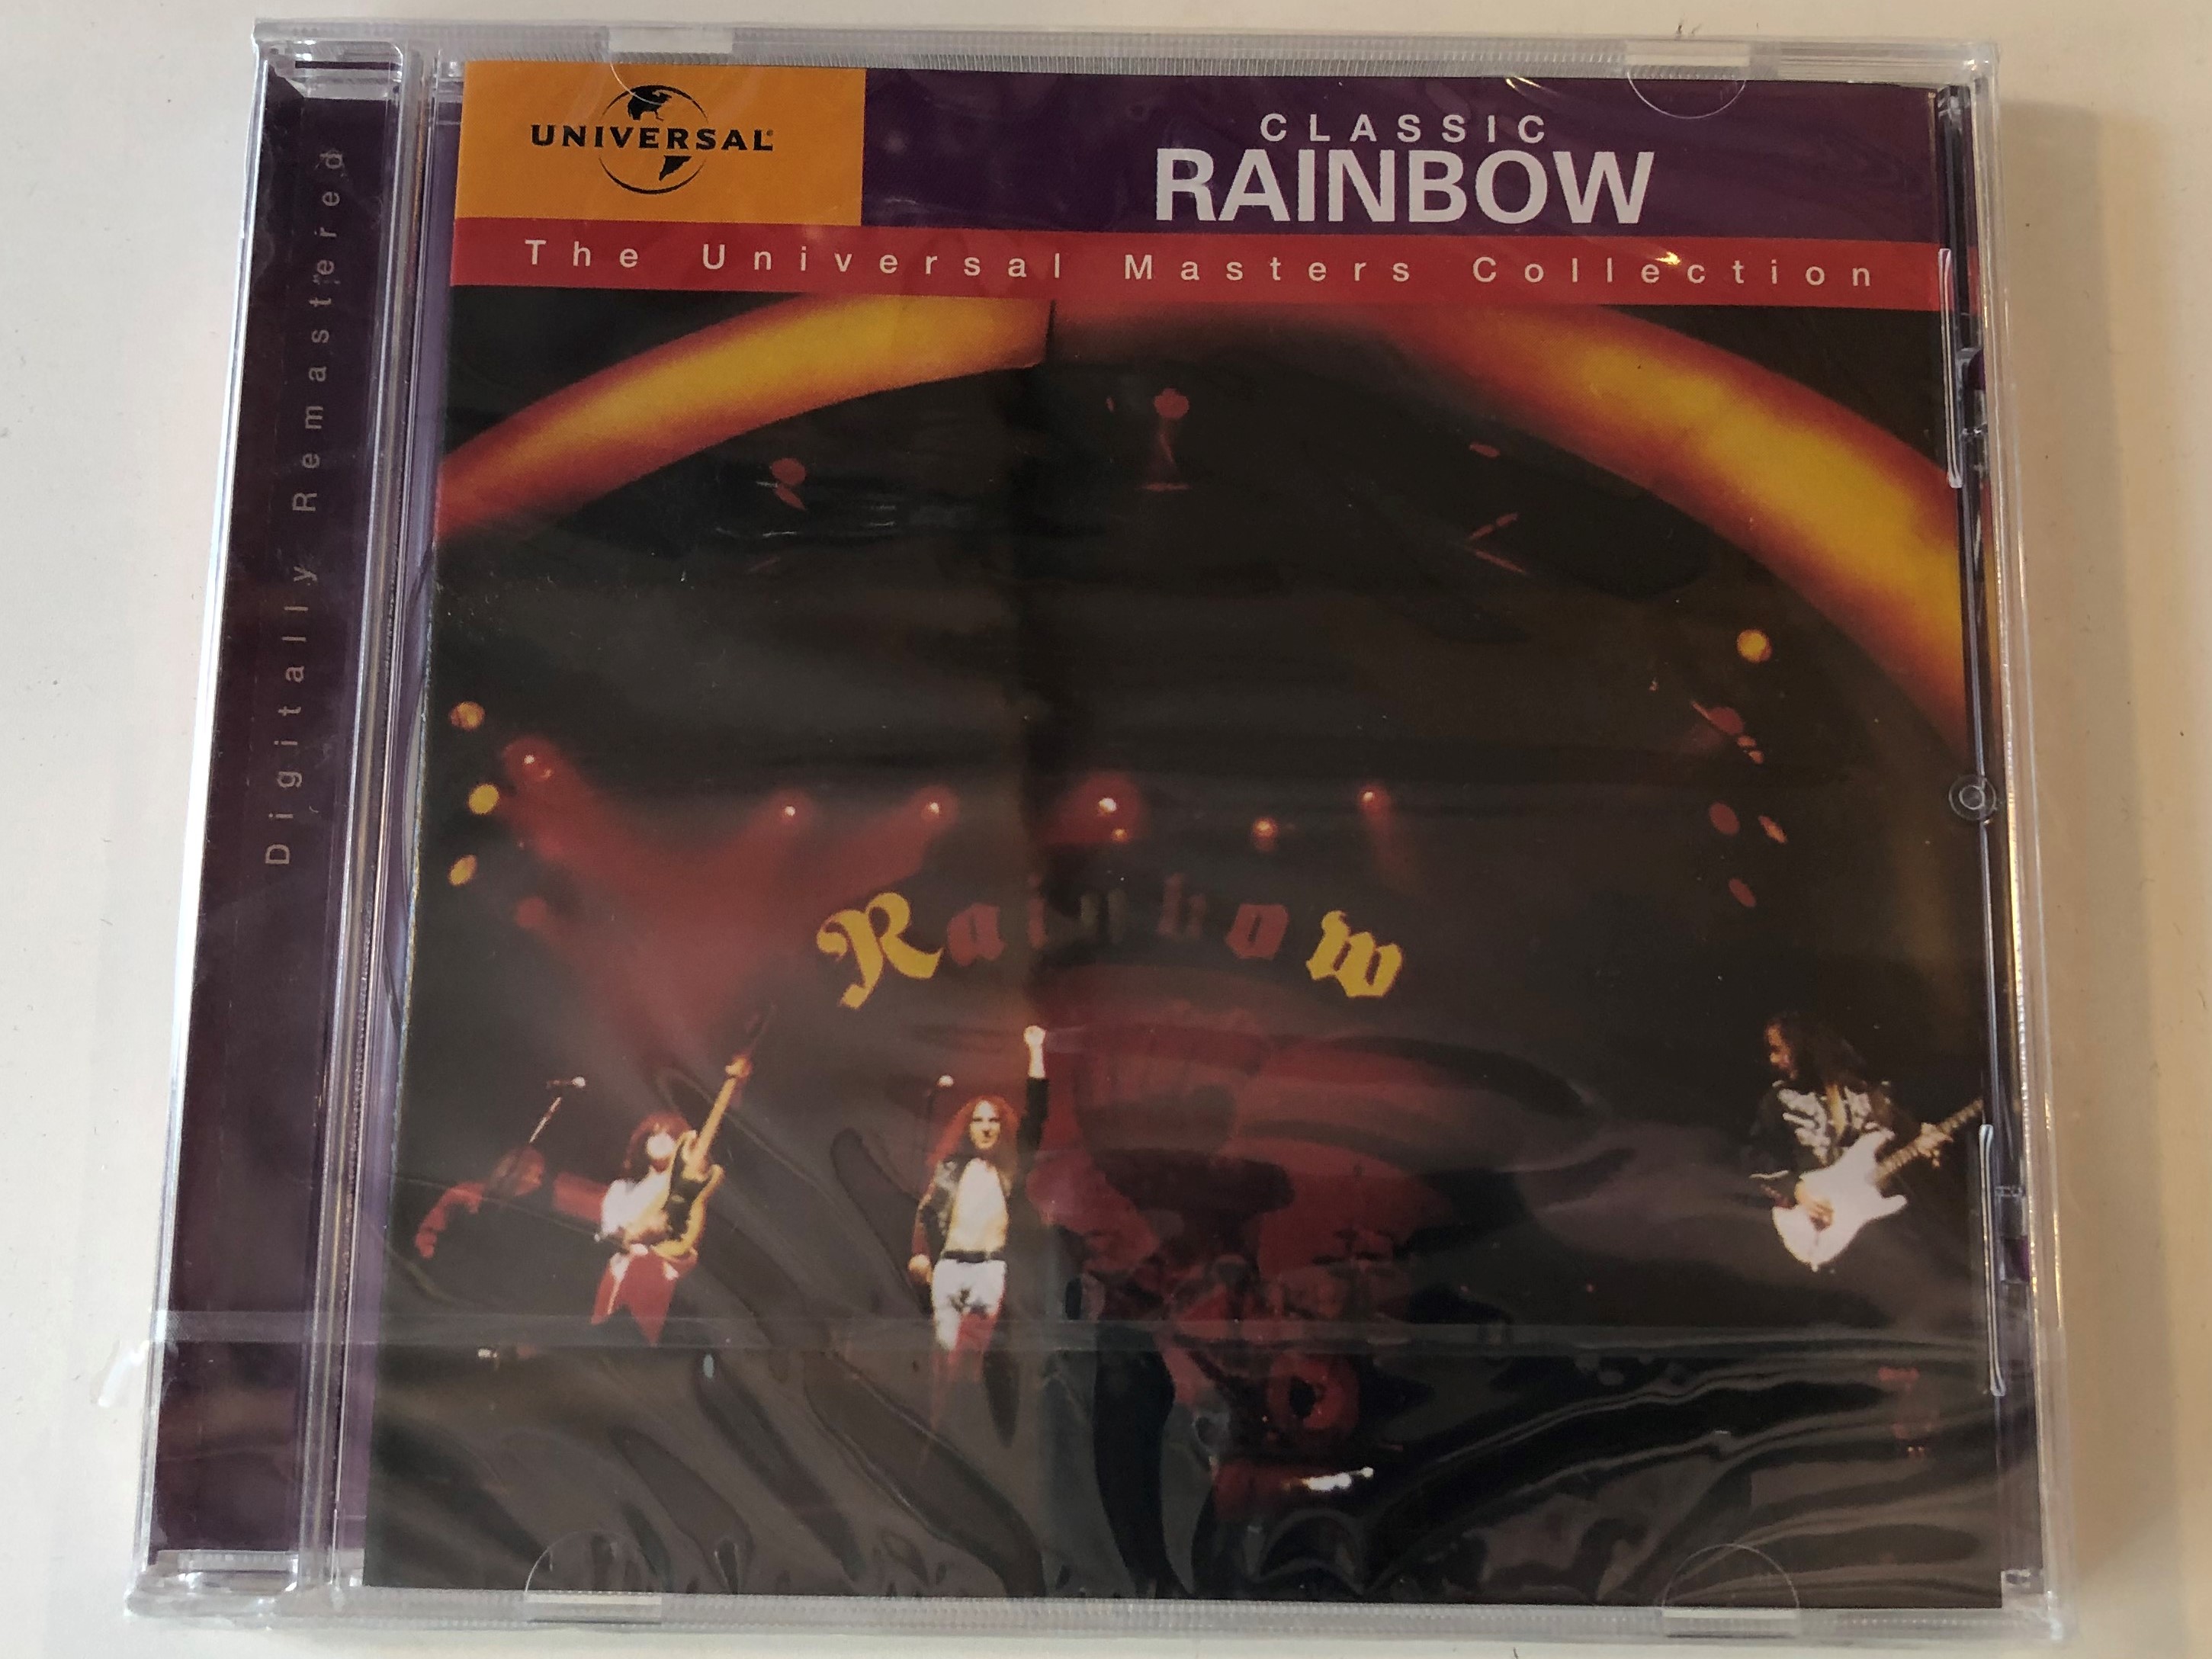 rainbow-classic-rainbow-polydor-audio-cd-2001-589157-2-1-.jpg